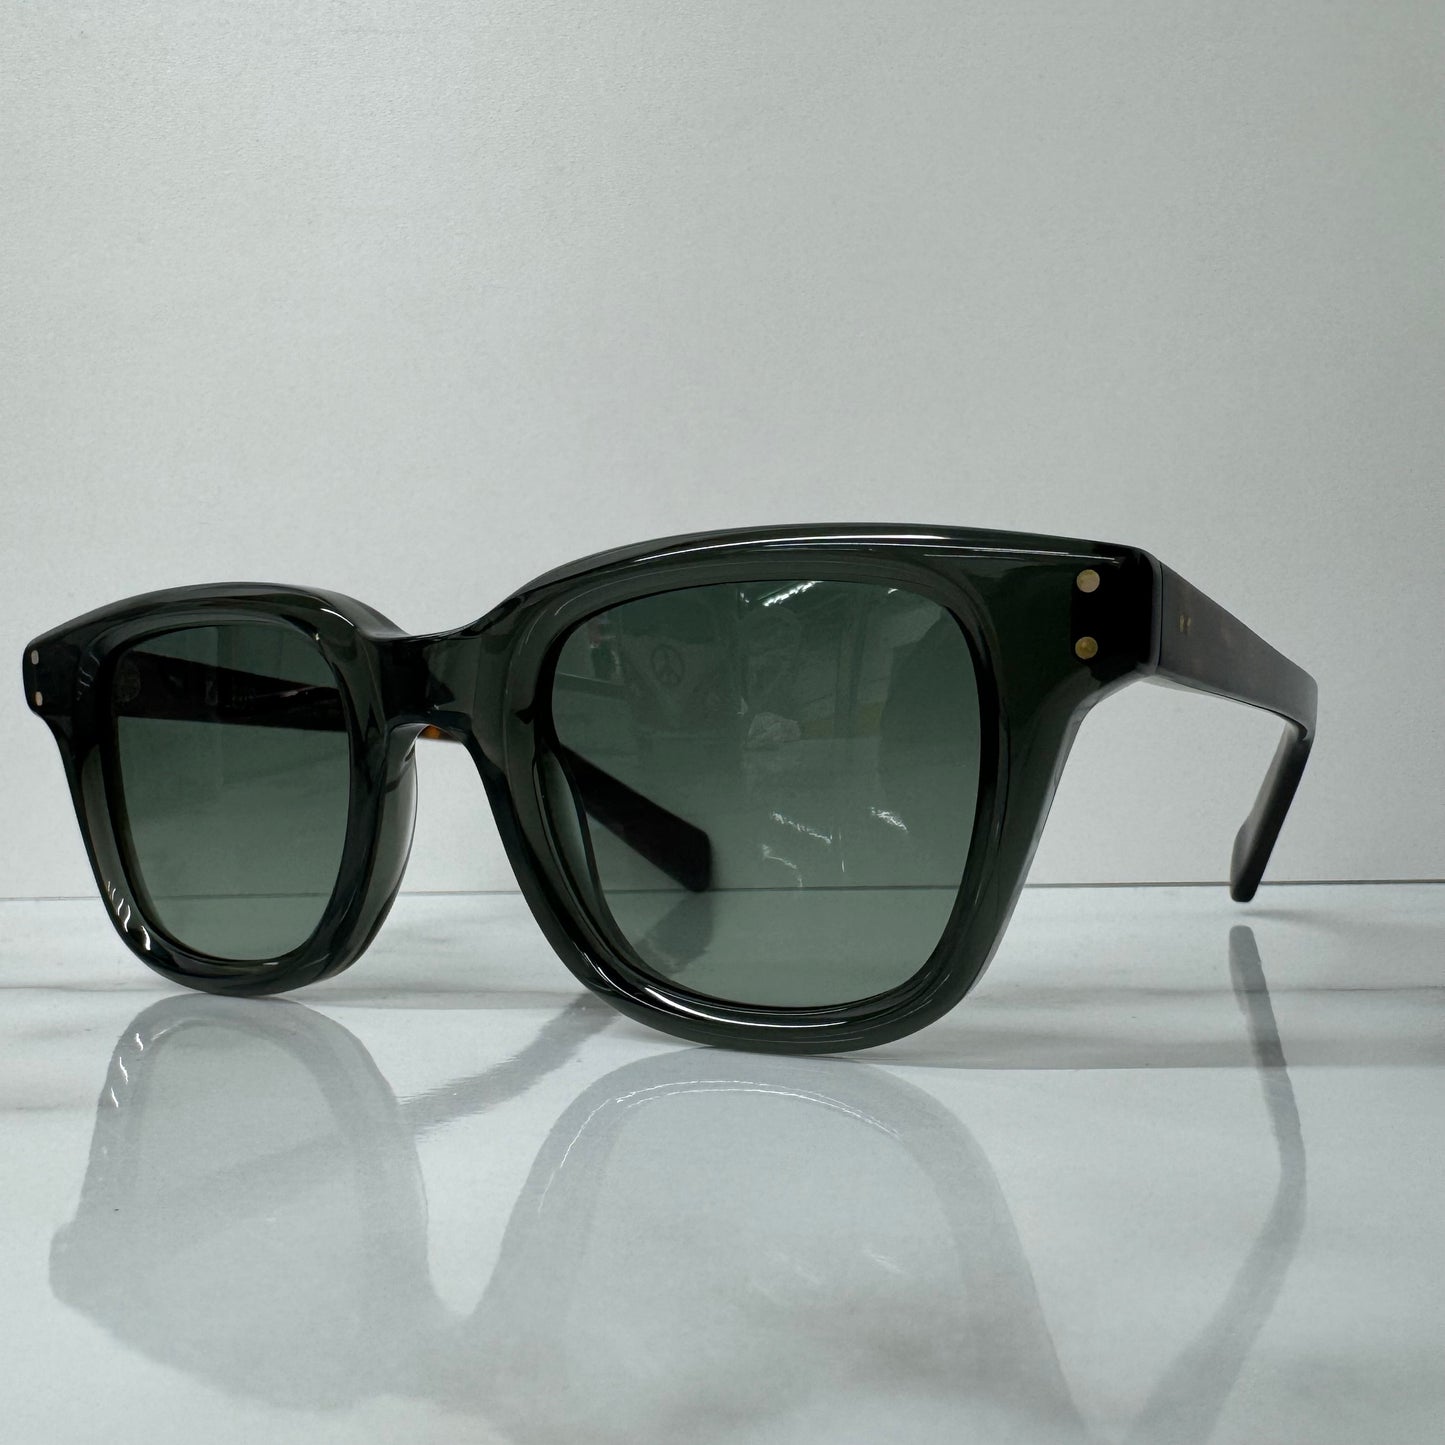 Kaleos Larson Sunglasses CAT2 Transparent Grey Tortoise Shell Square Glasses